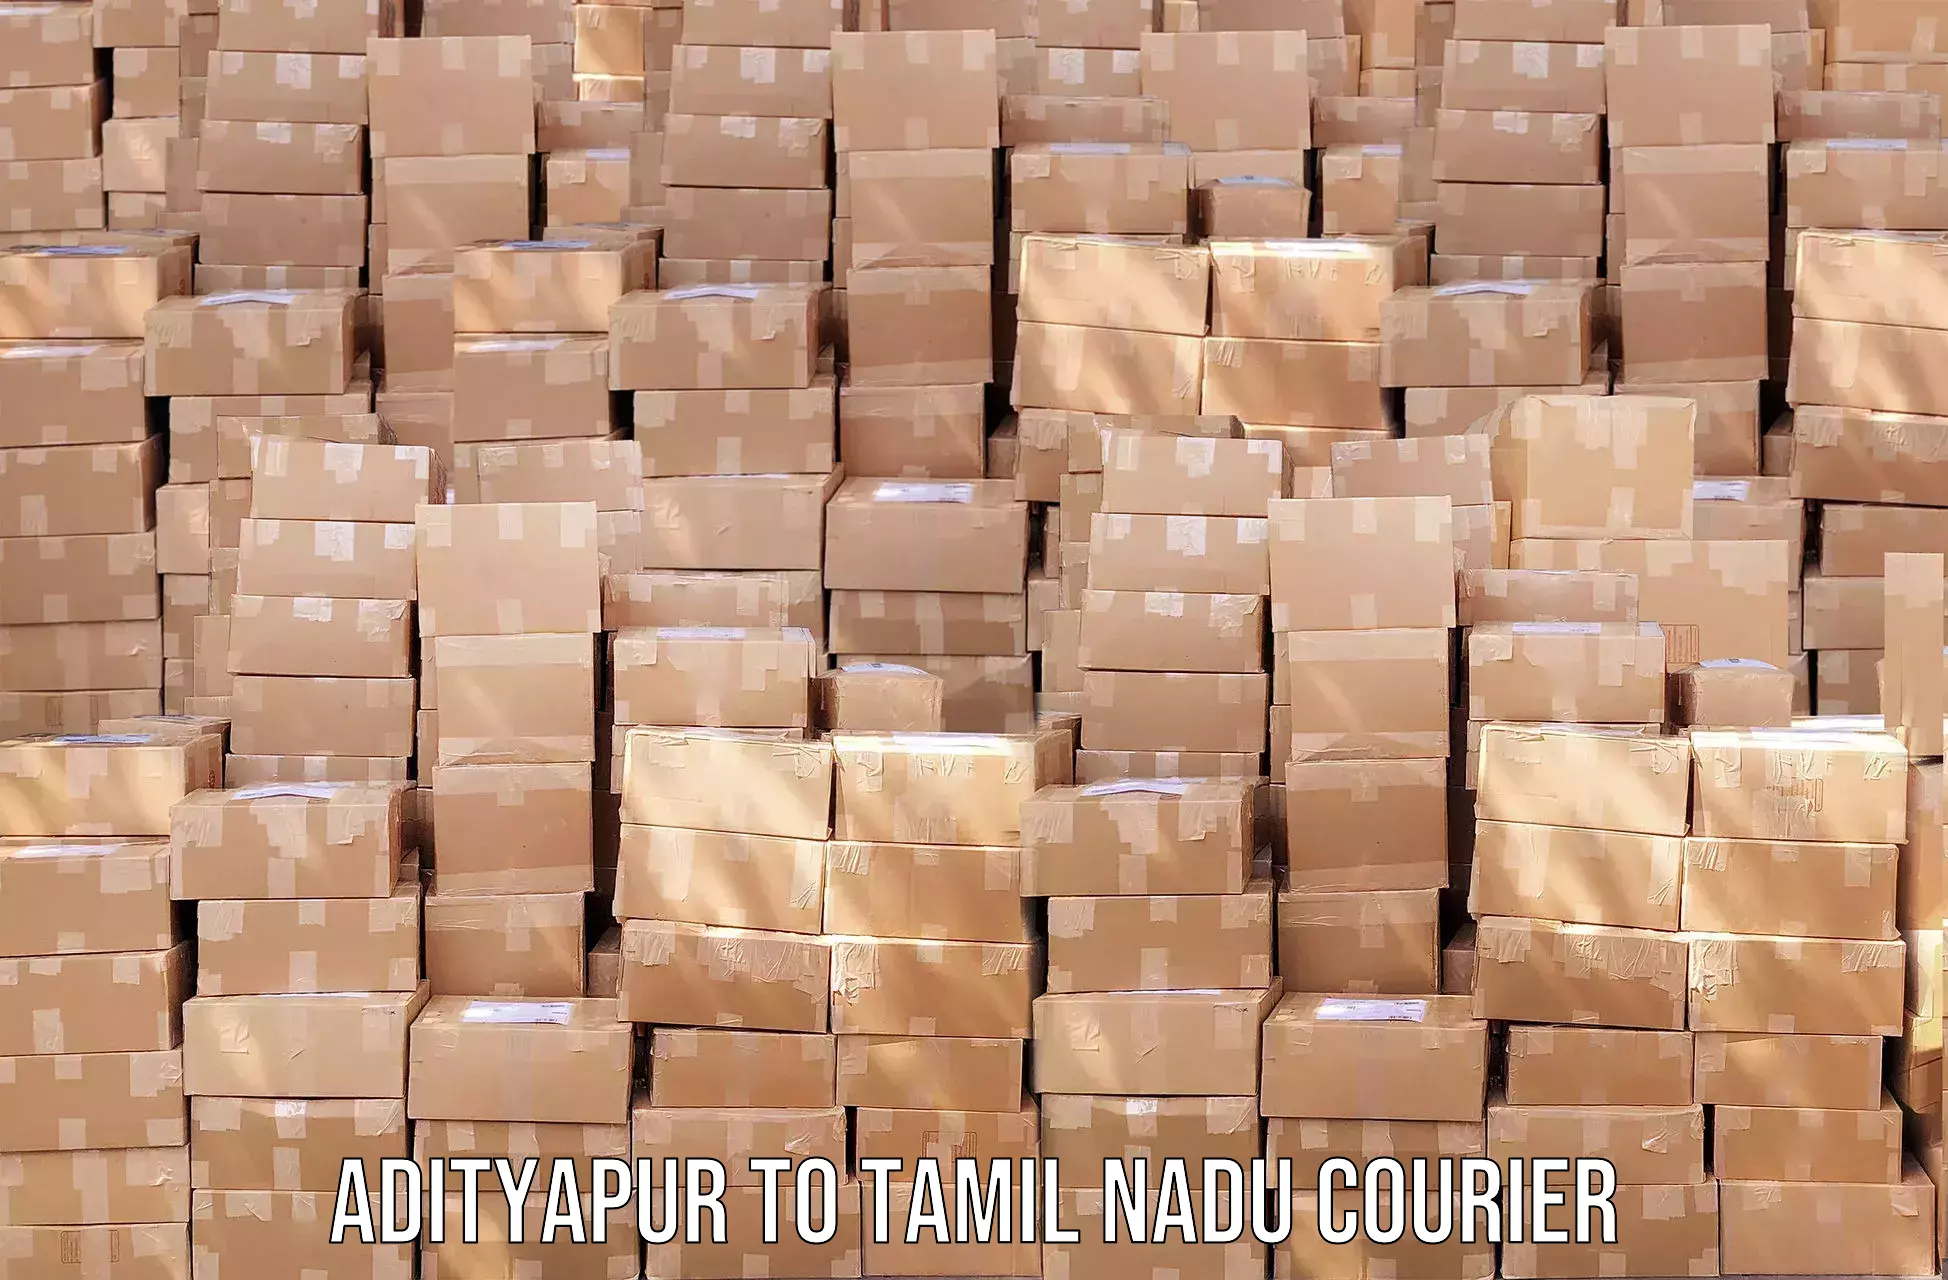 Bulk courier orders Adityapur to Tamil Nadu